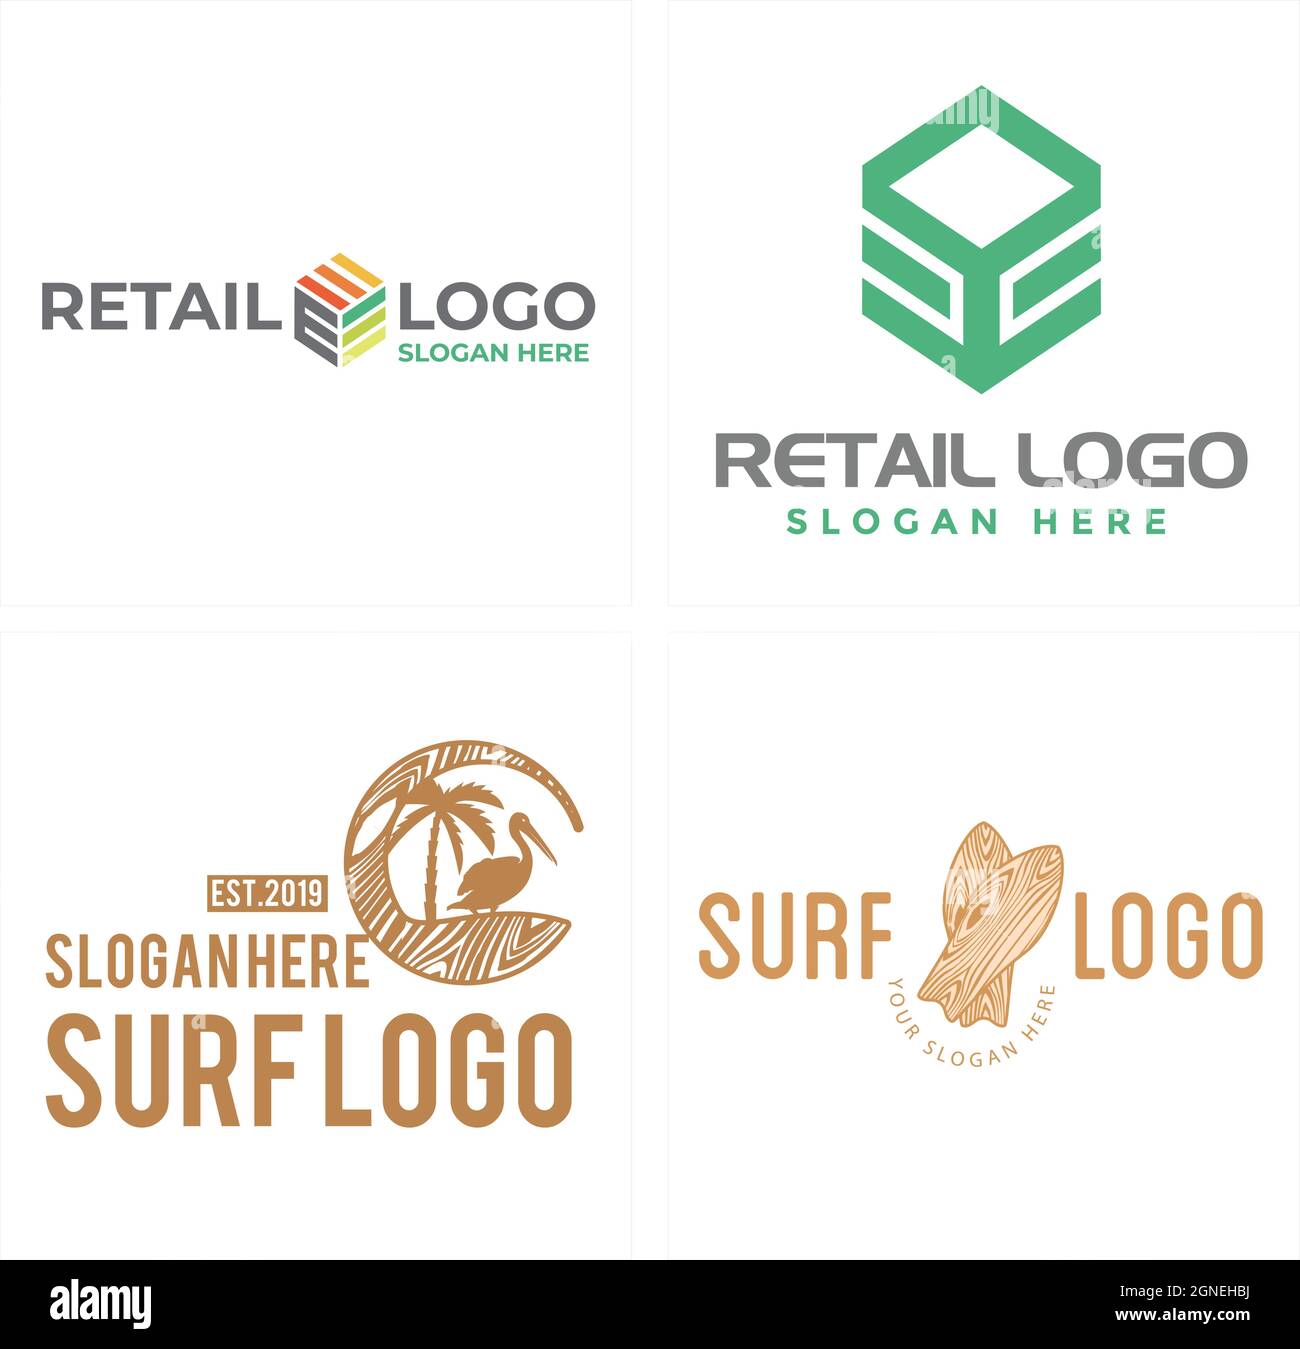 Diseño del logotipo del mercado minorista Ilustración del Vector